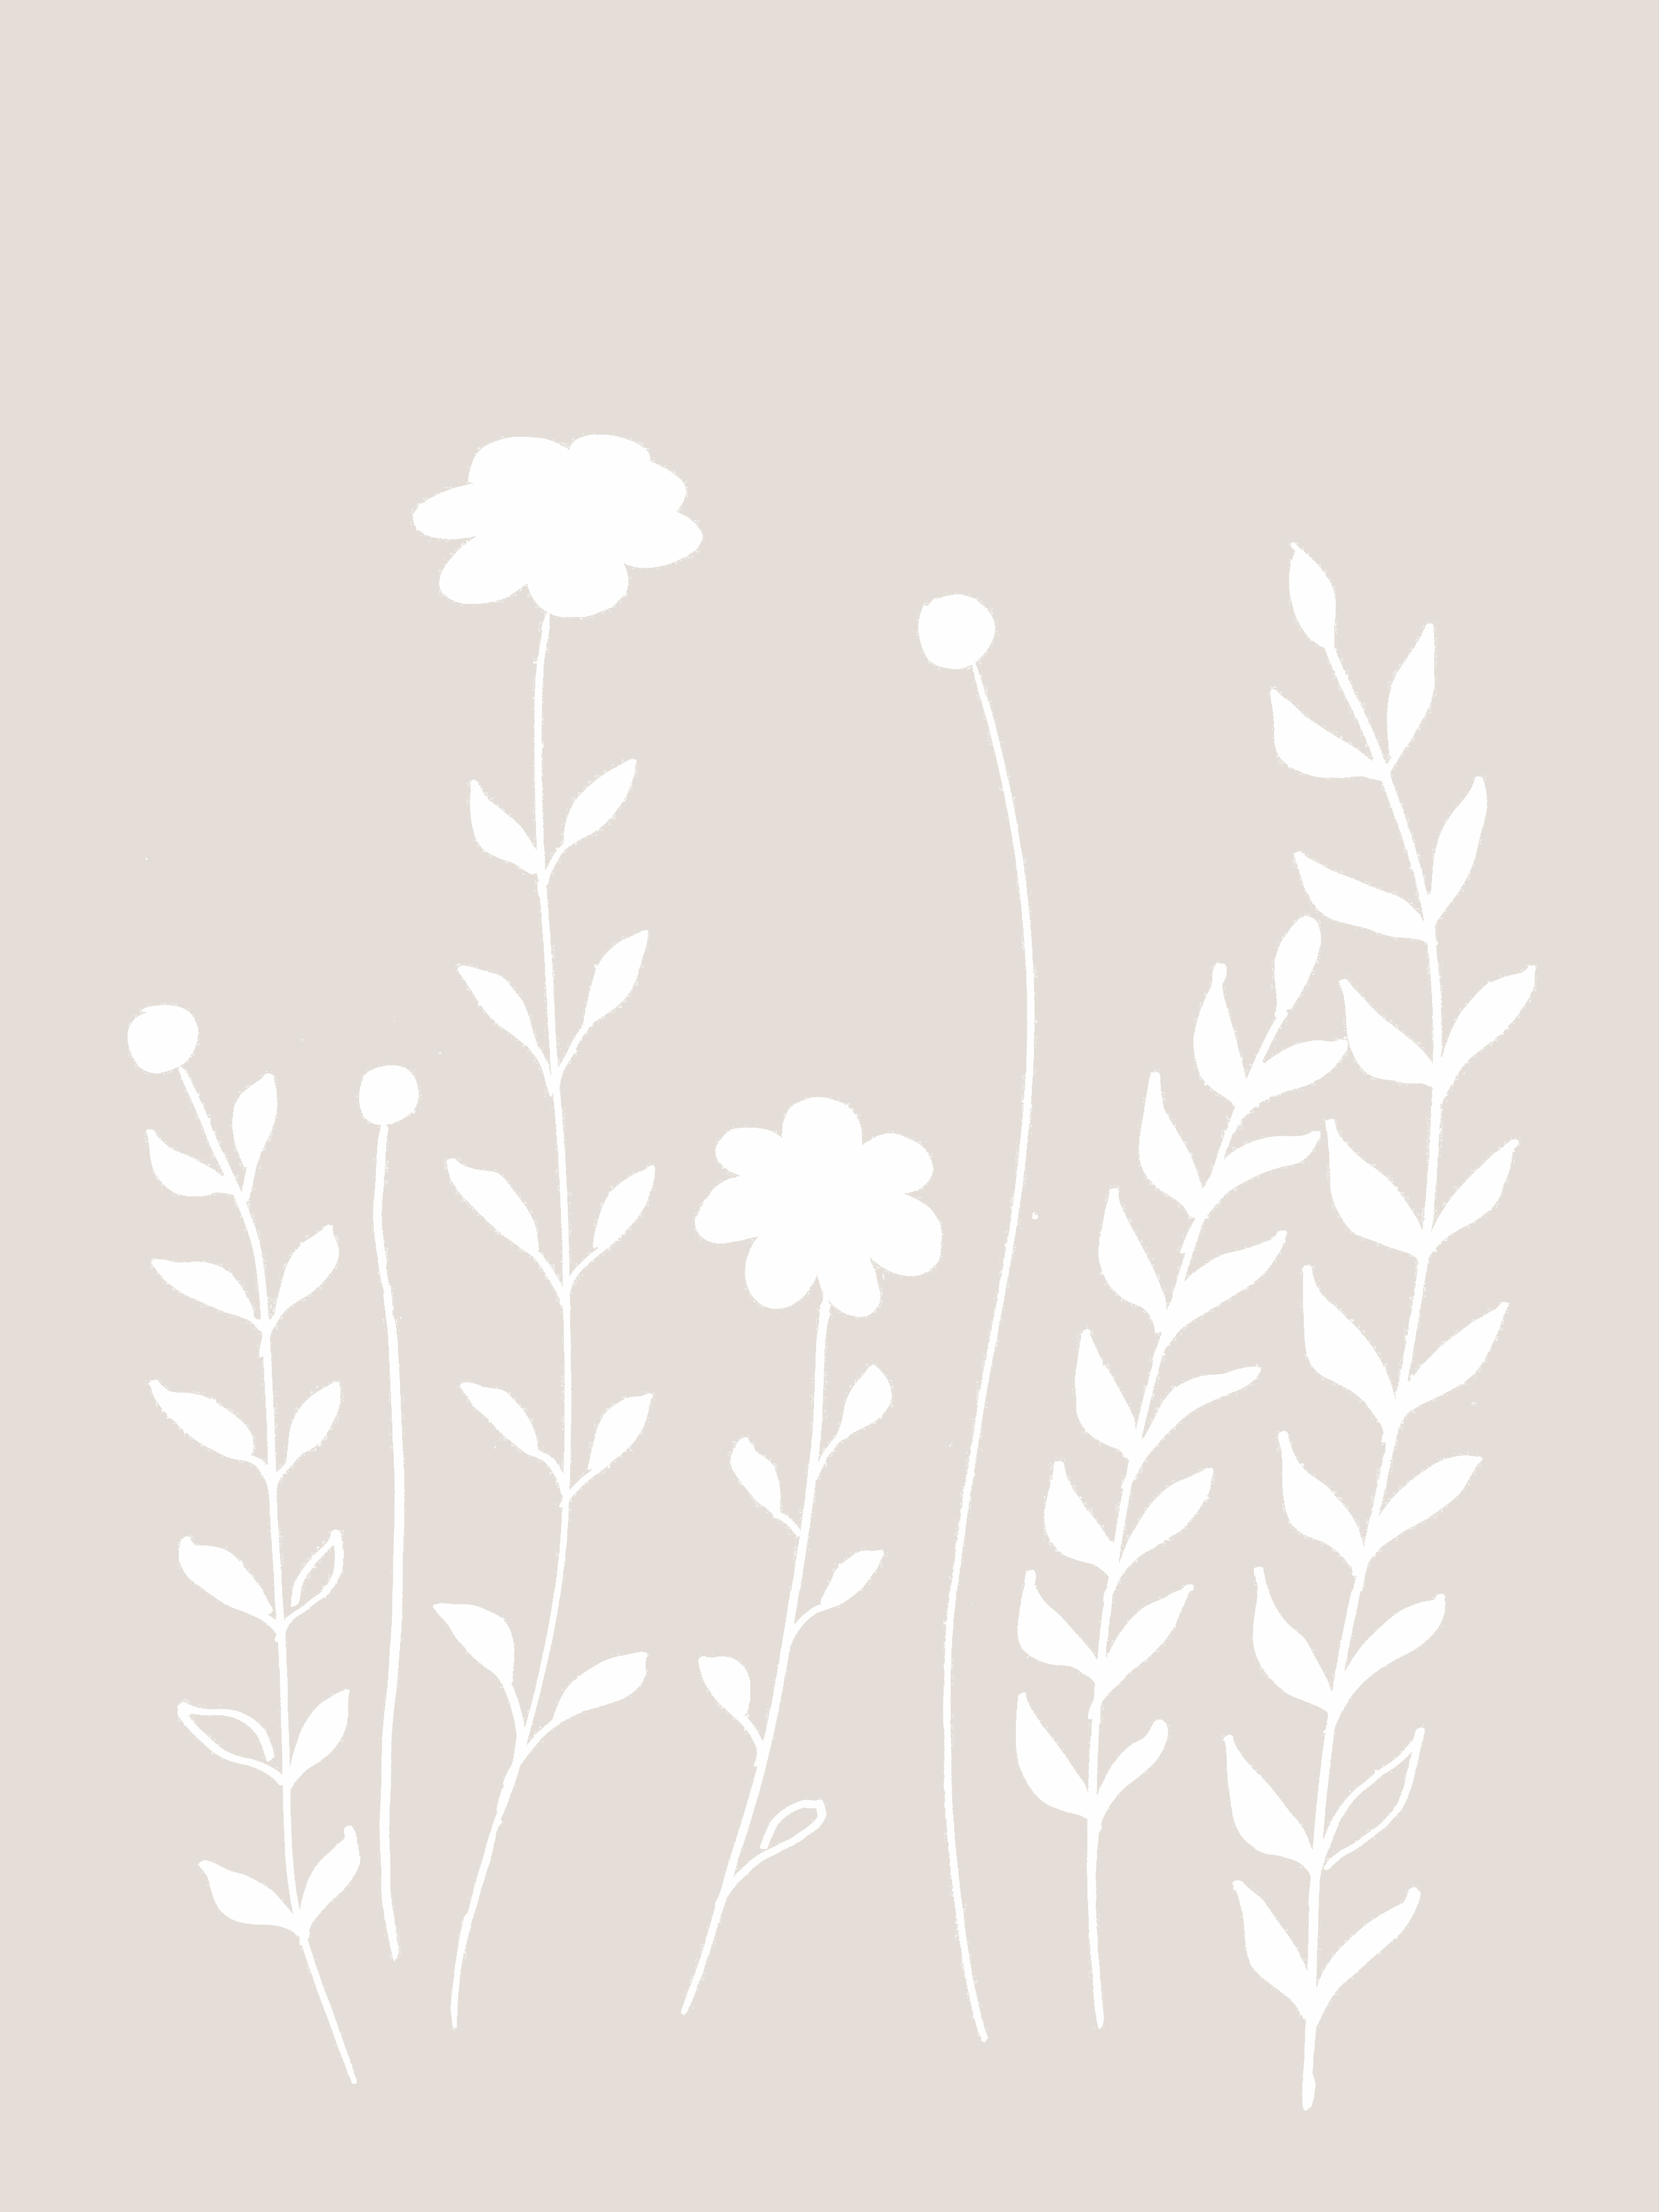 890-skandi-style--flowers-and-leaves.jpg